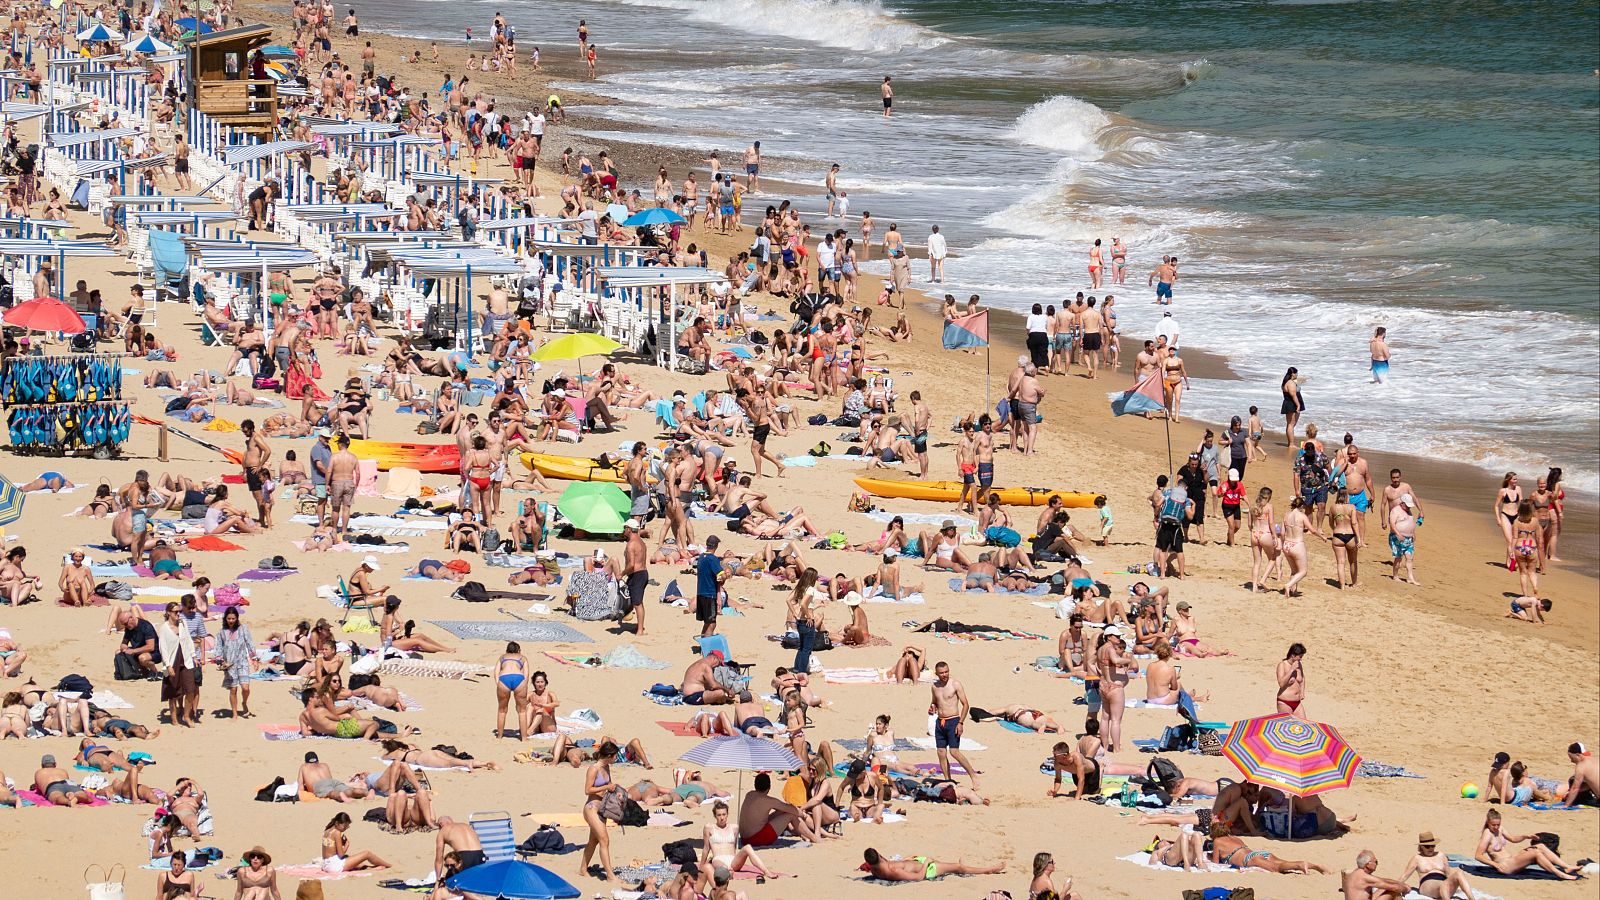 Los turistas extranjeros prefieren cada vez más destinos del norte de España como esta playa de San Sebastián